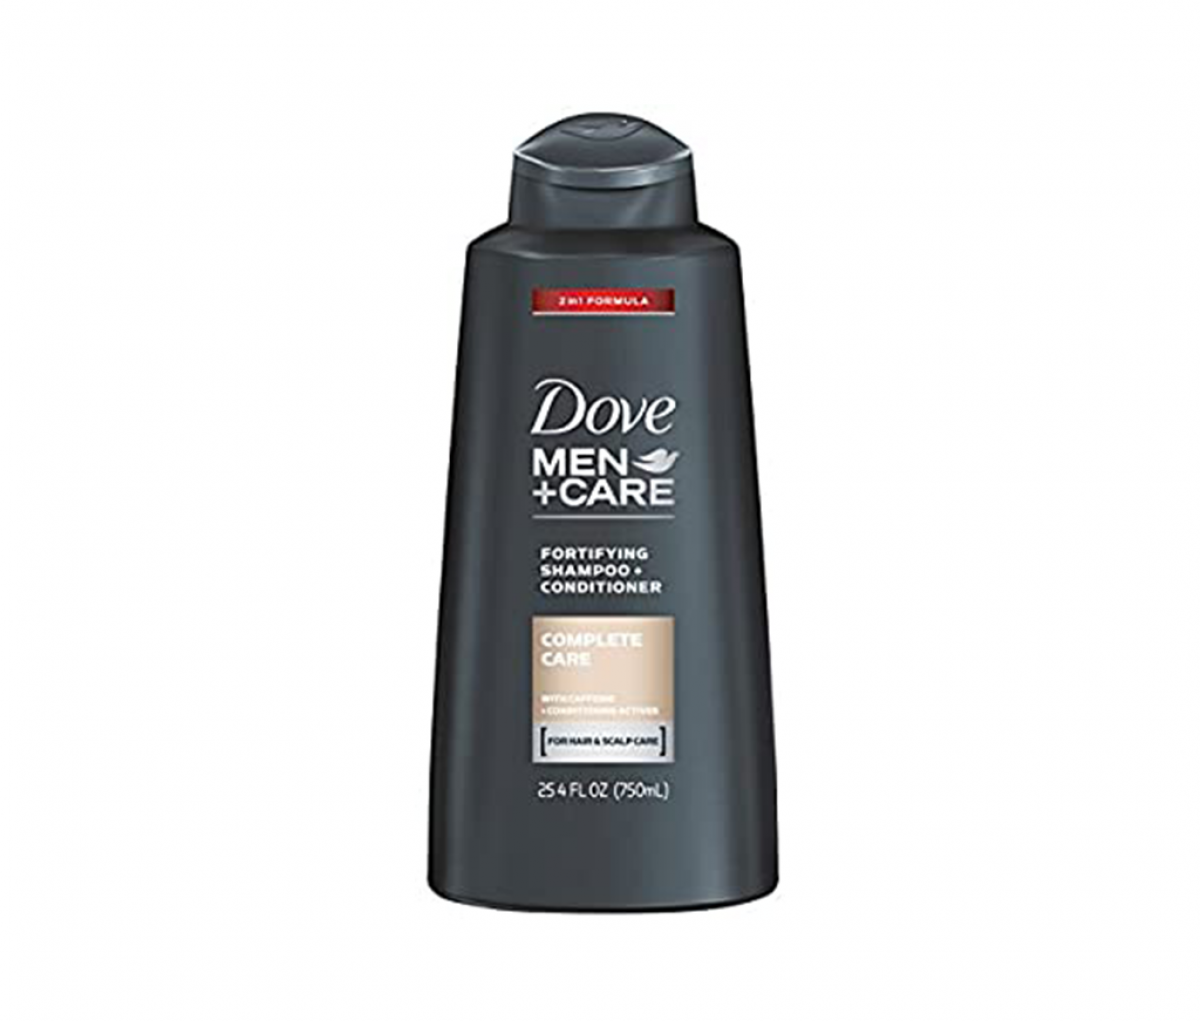 Dove 25 4oz 2in1 Complete Care For Men Shampoo